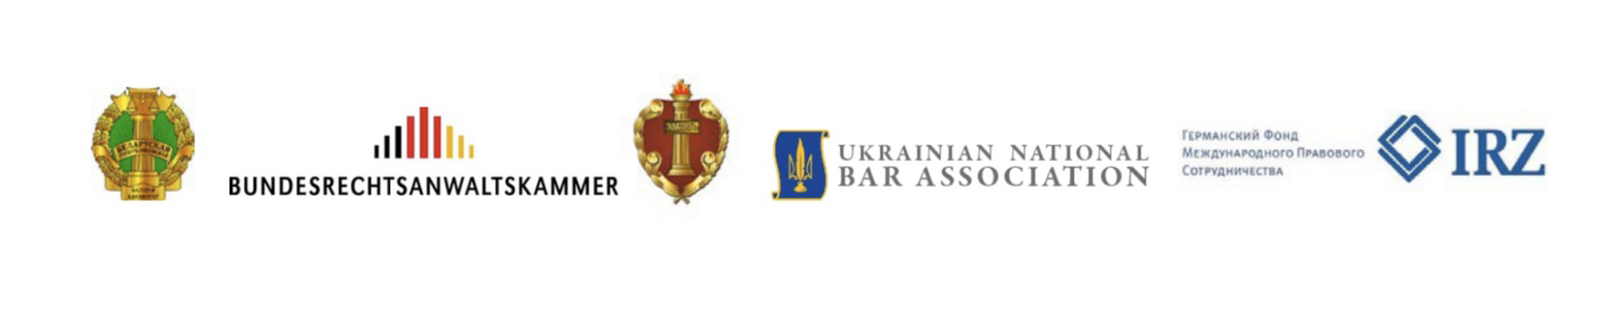 Место и роль адвокатуры в правоприменительной системе обсудят в Минске  адвокаты четырех стран